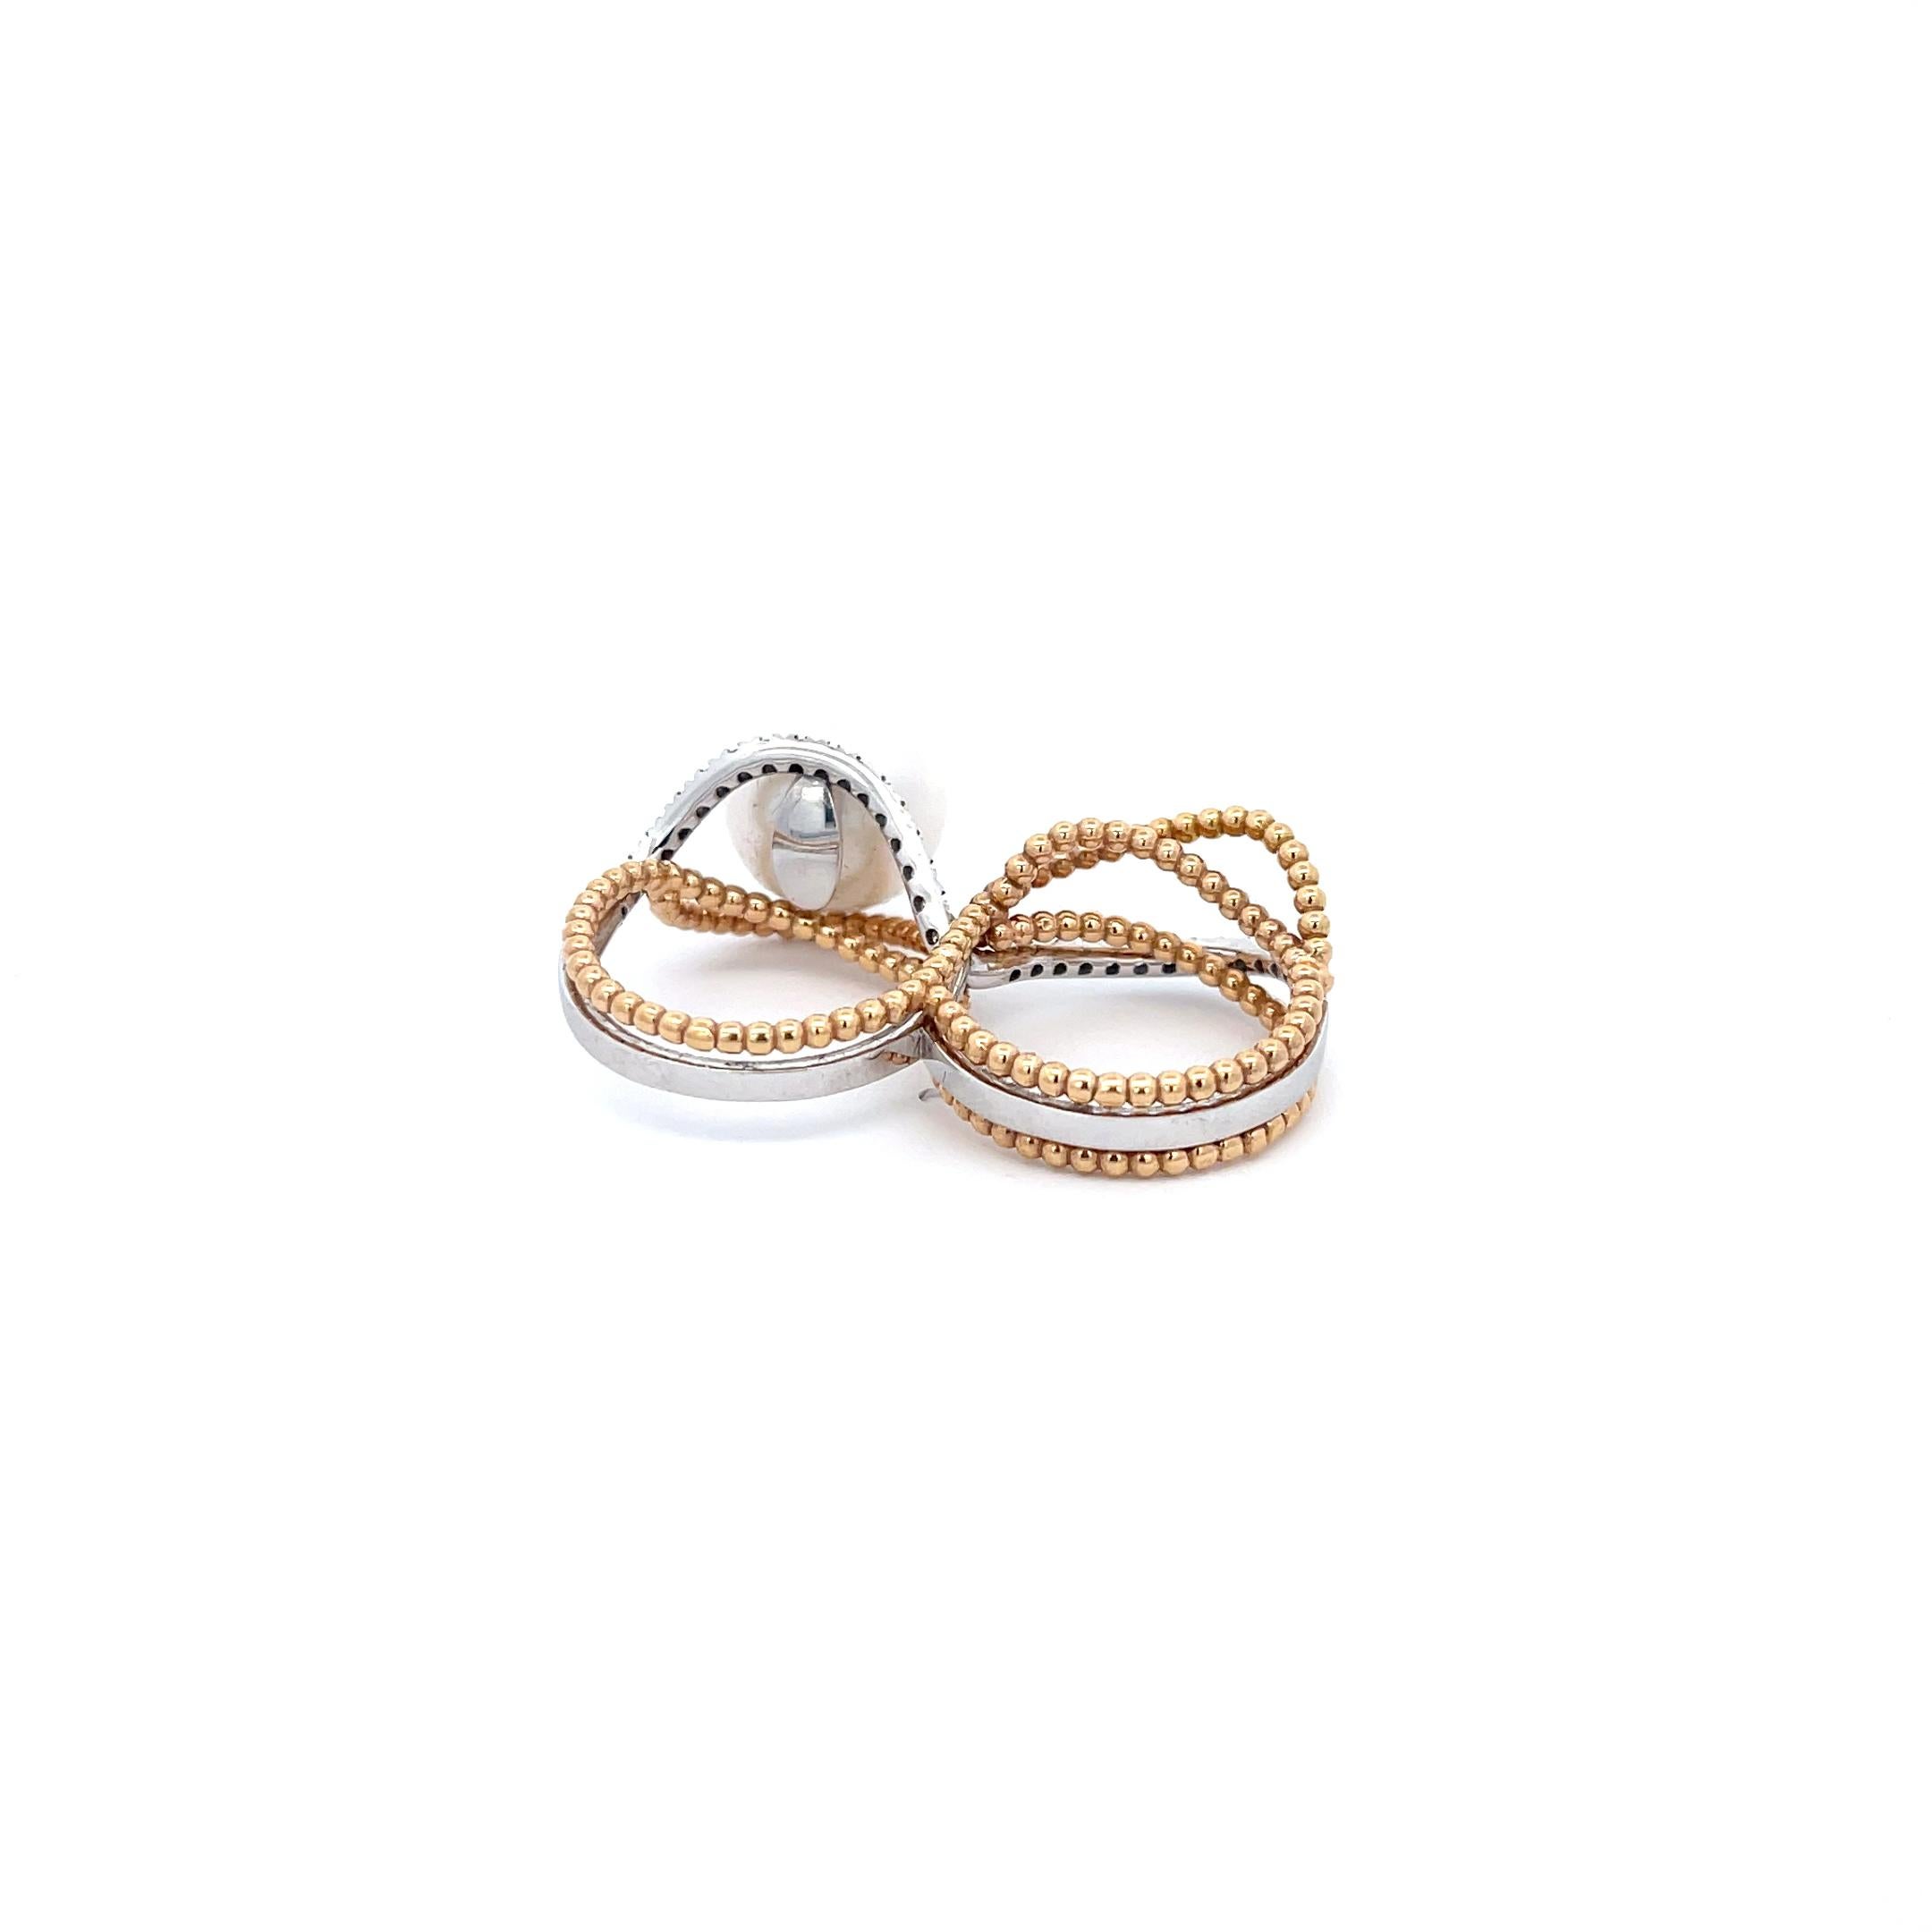 Utopia Doppelfinger-Birnen- und Diamantring aus 18 Karat Weiß- und Gelbgold. Fingergröße 6 & 6.5
13mm Weiße Perle  
14,79 Gramm